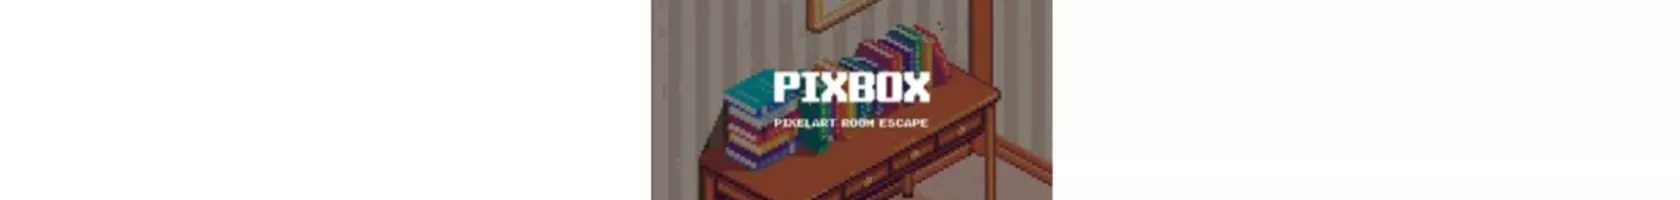  PIXBOX